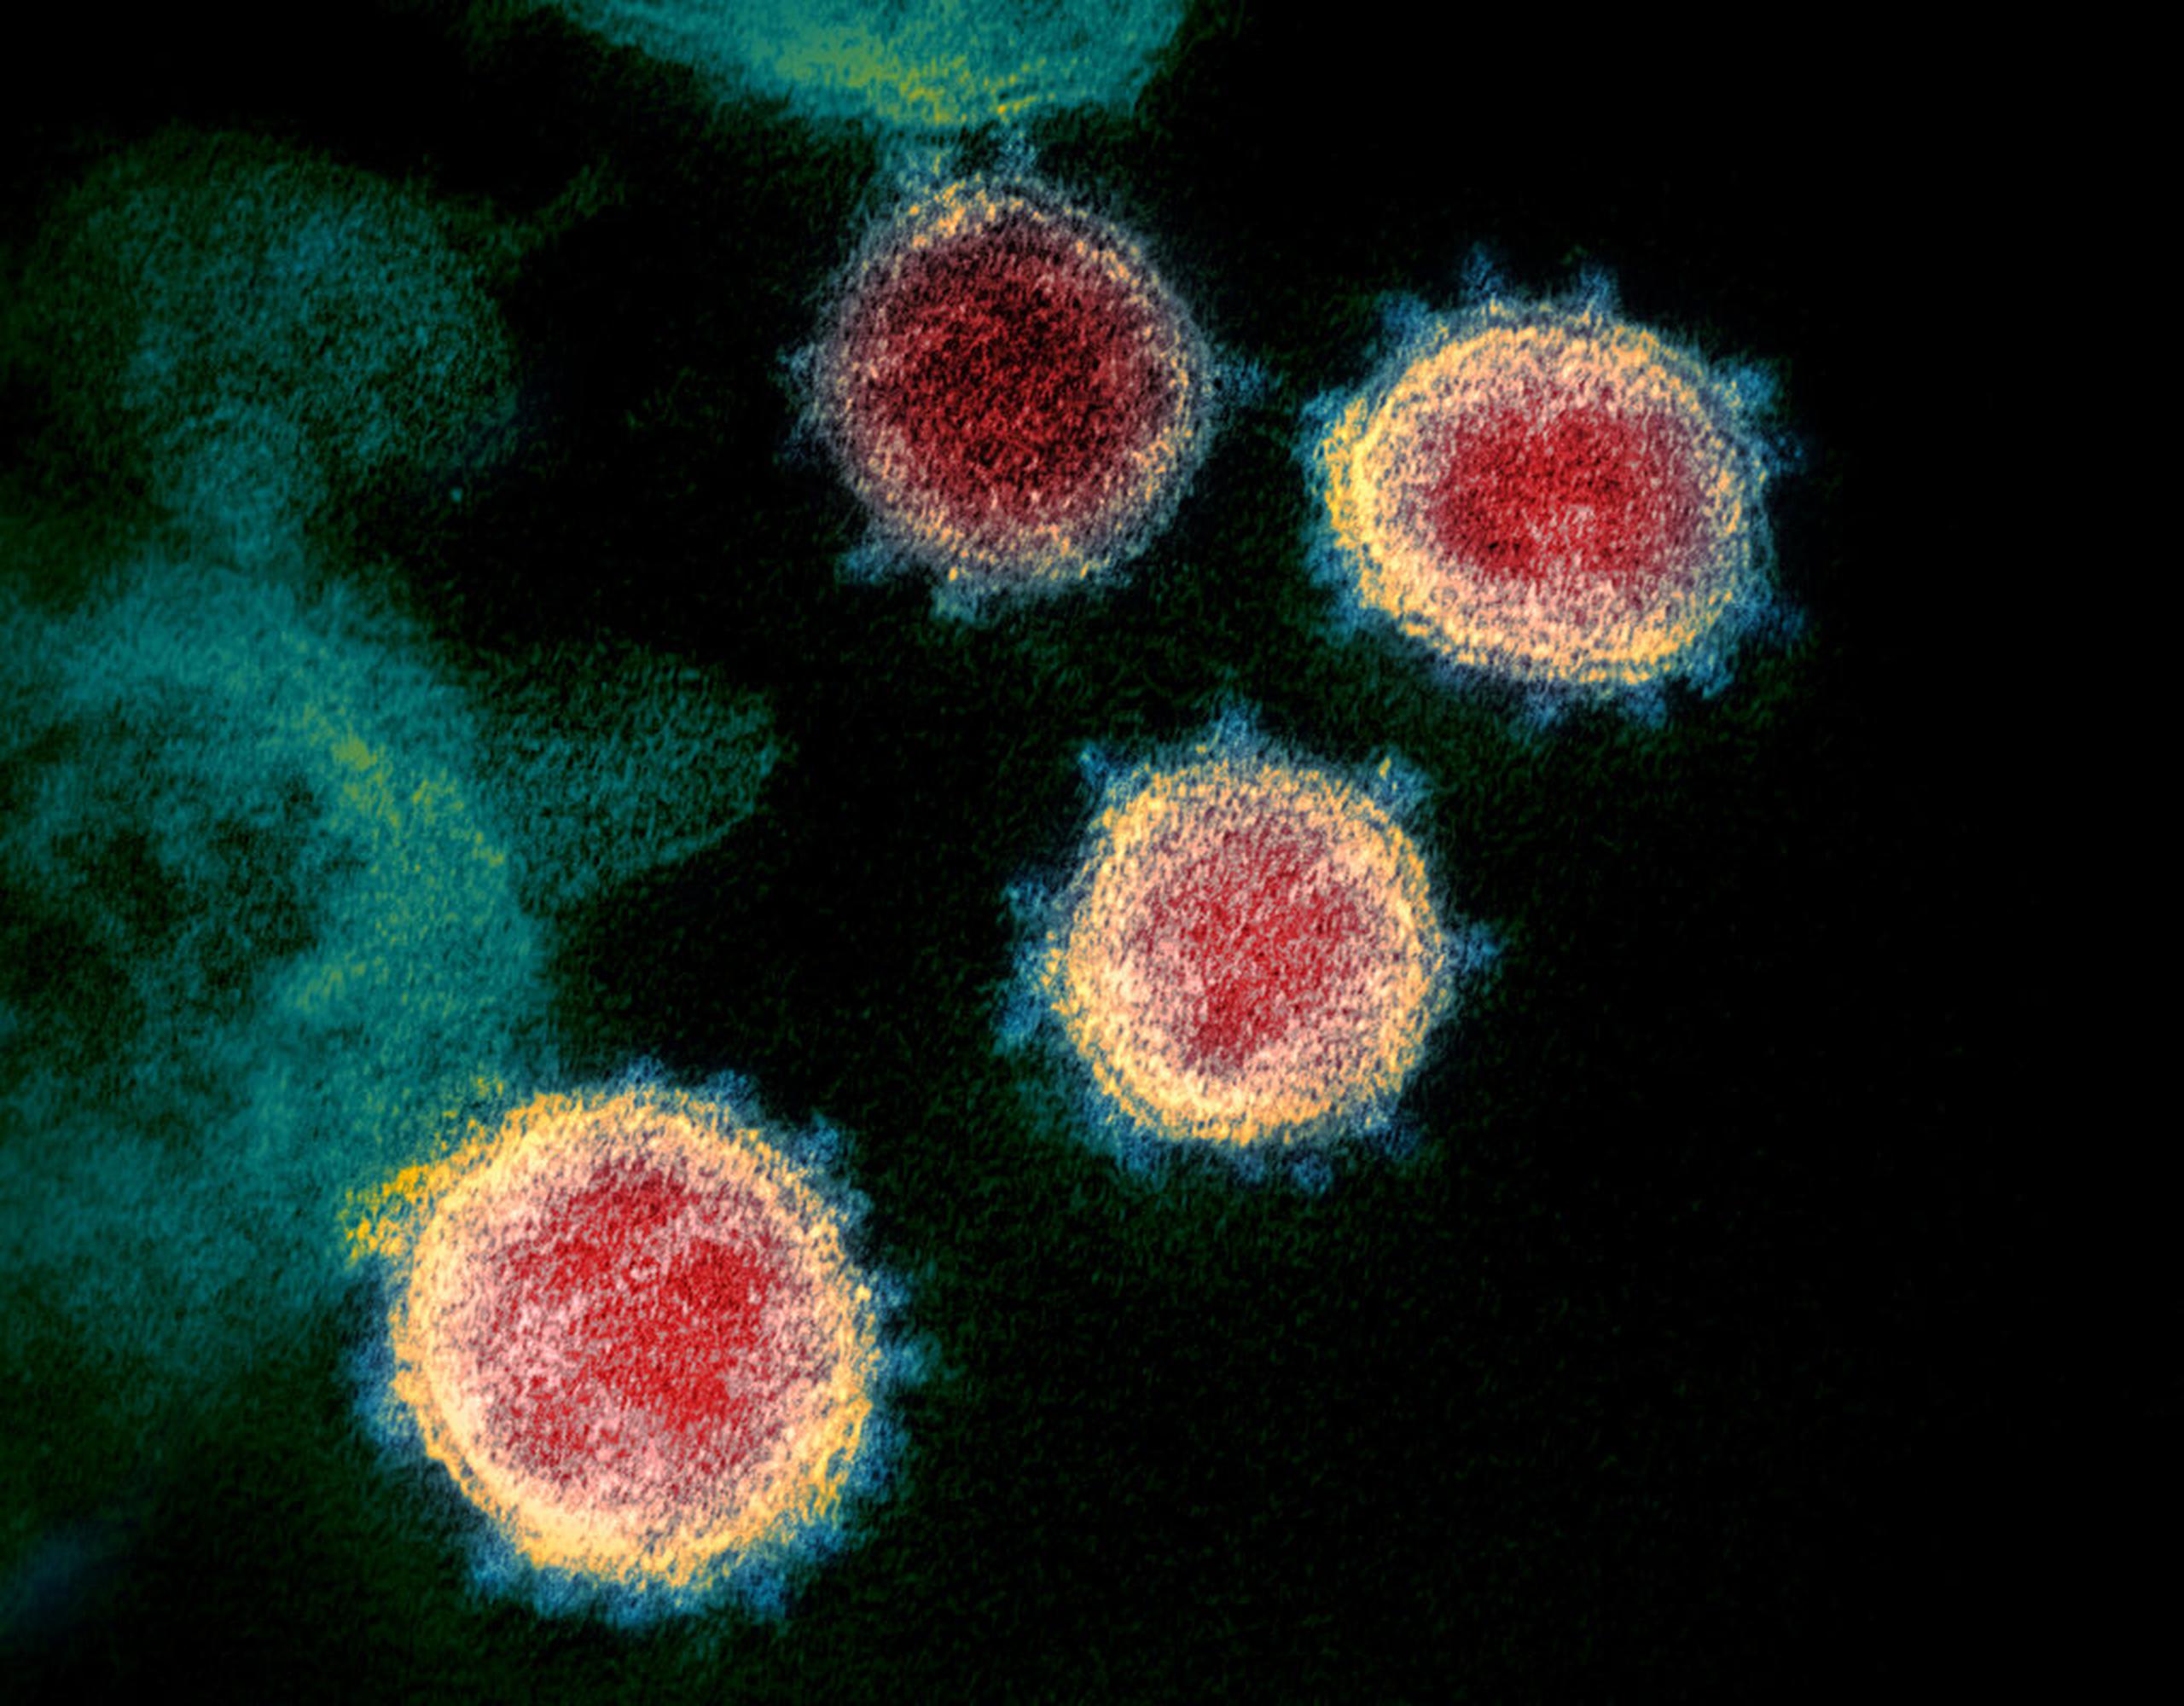 Imagen de microscopio electrónico que muestra el coronavirus que causa la enfermedad COVID-19.